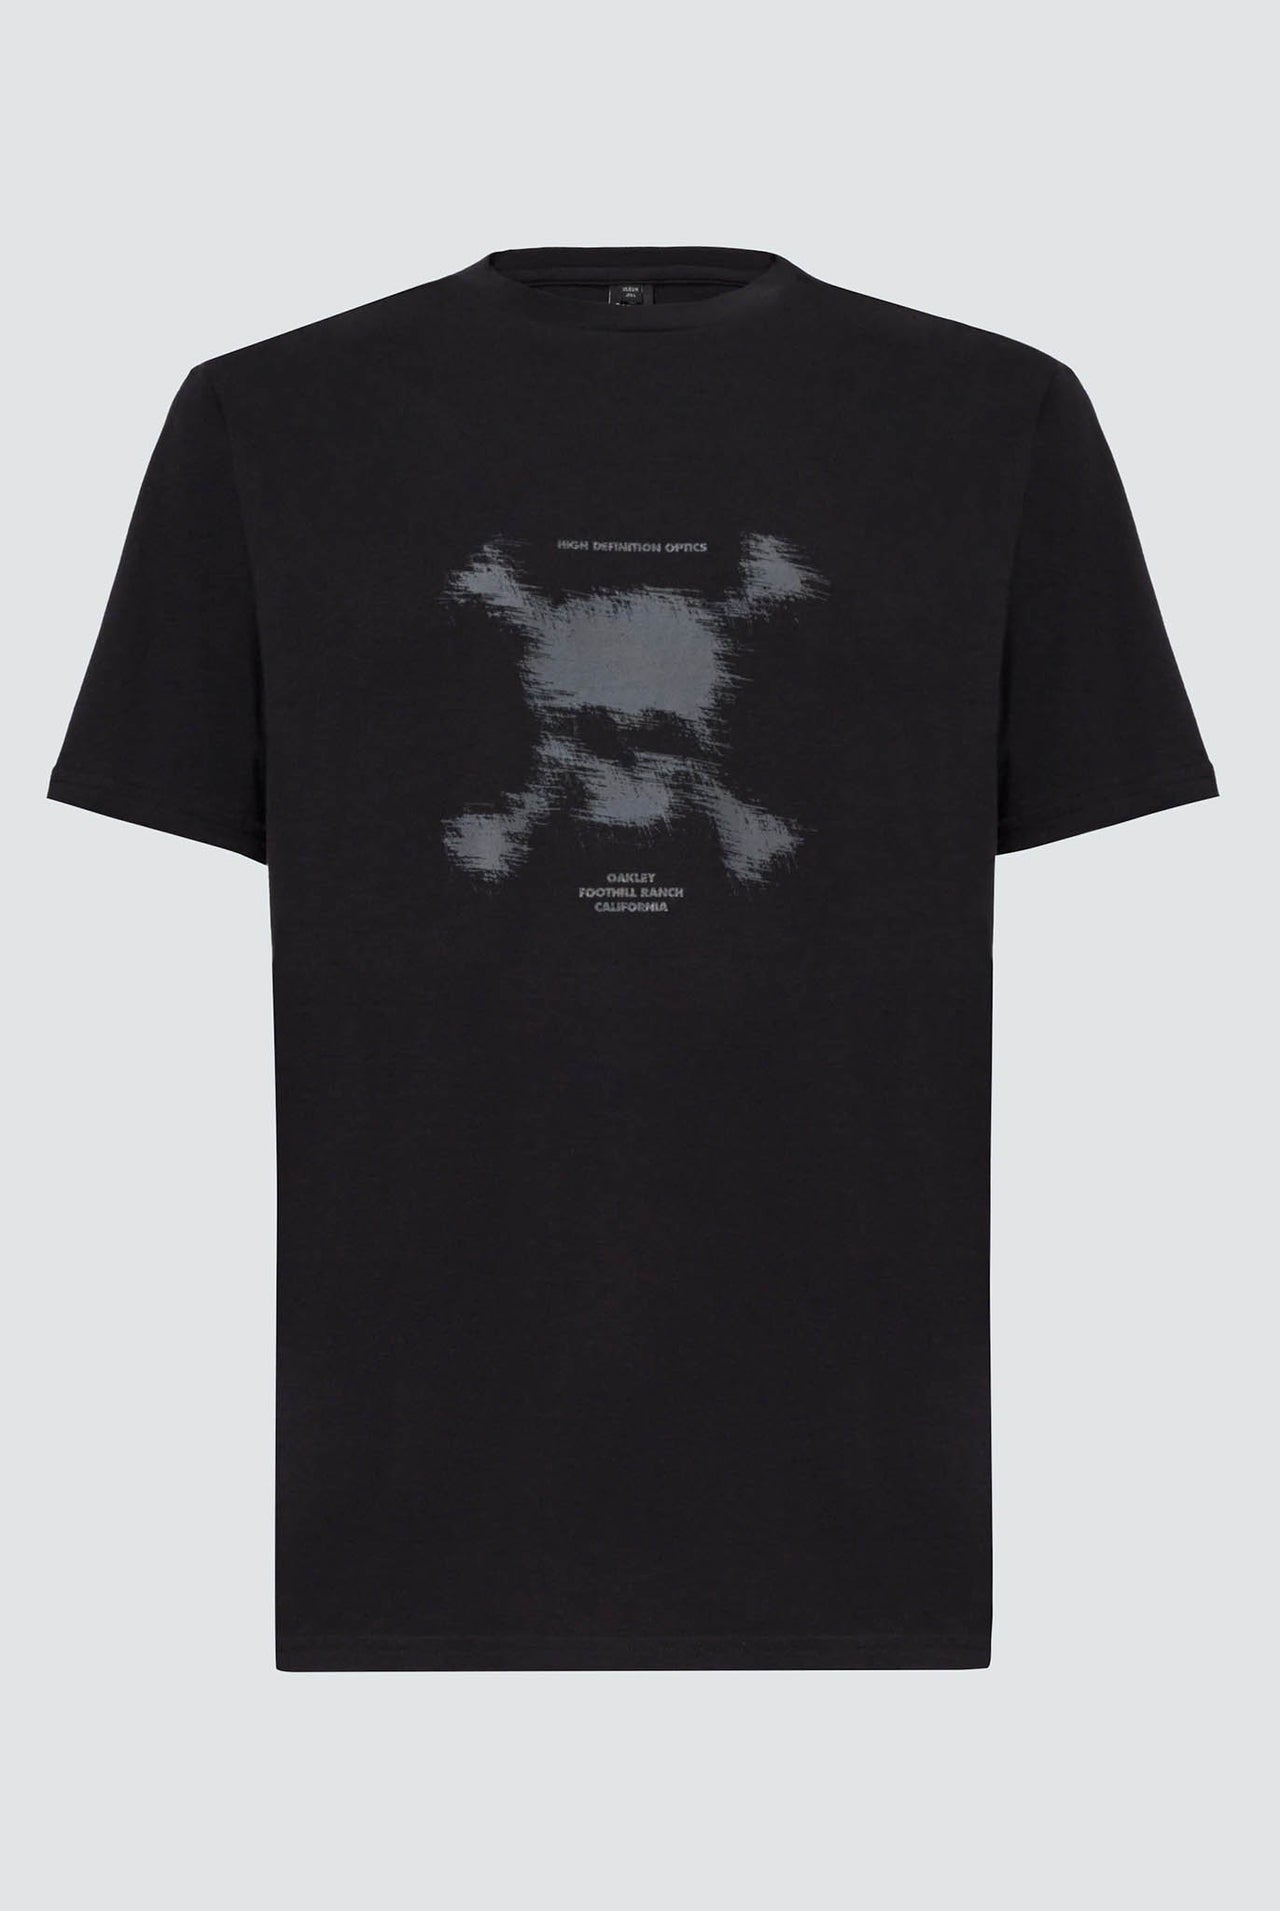 Camiseta Oakley Blurred Scatter Skull Tee